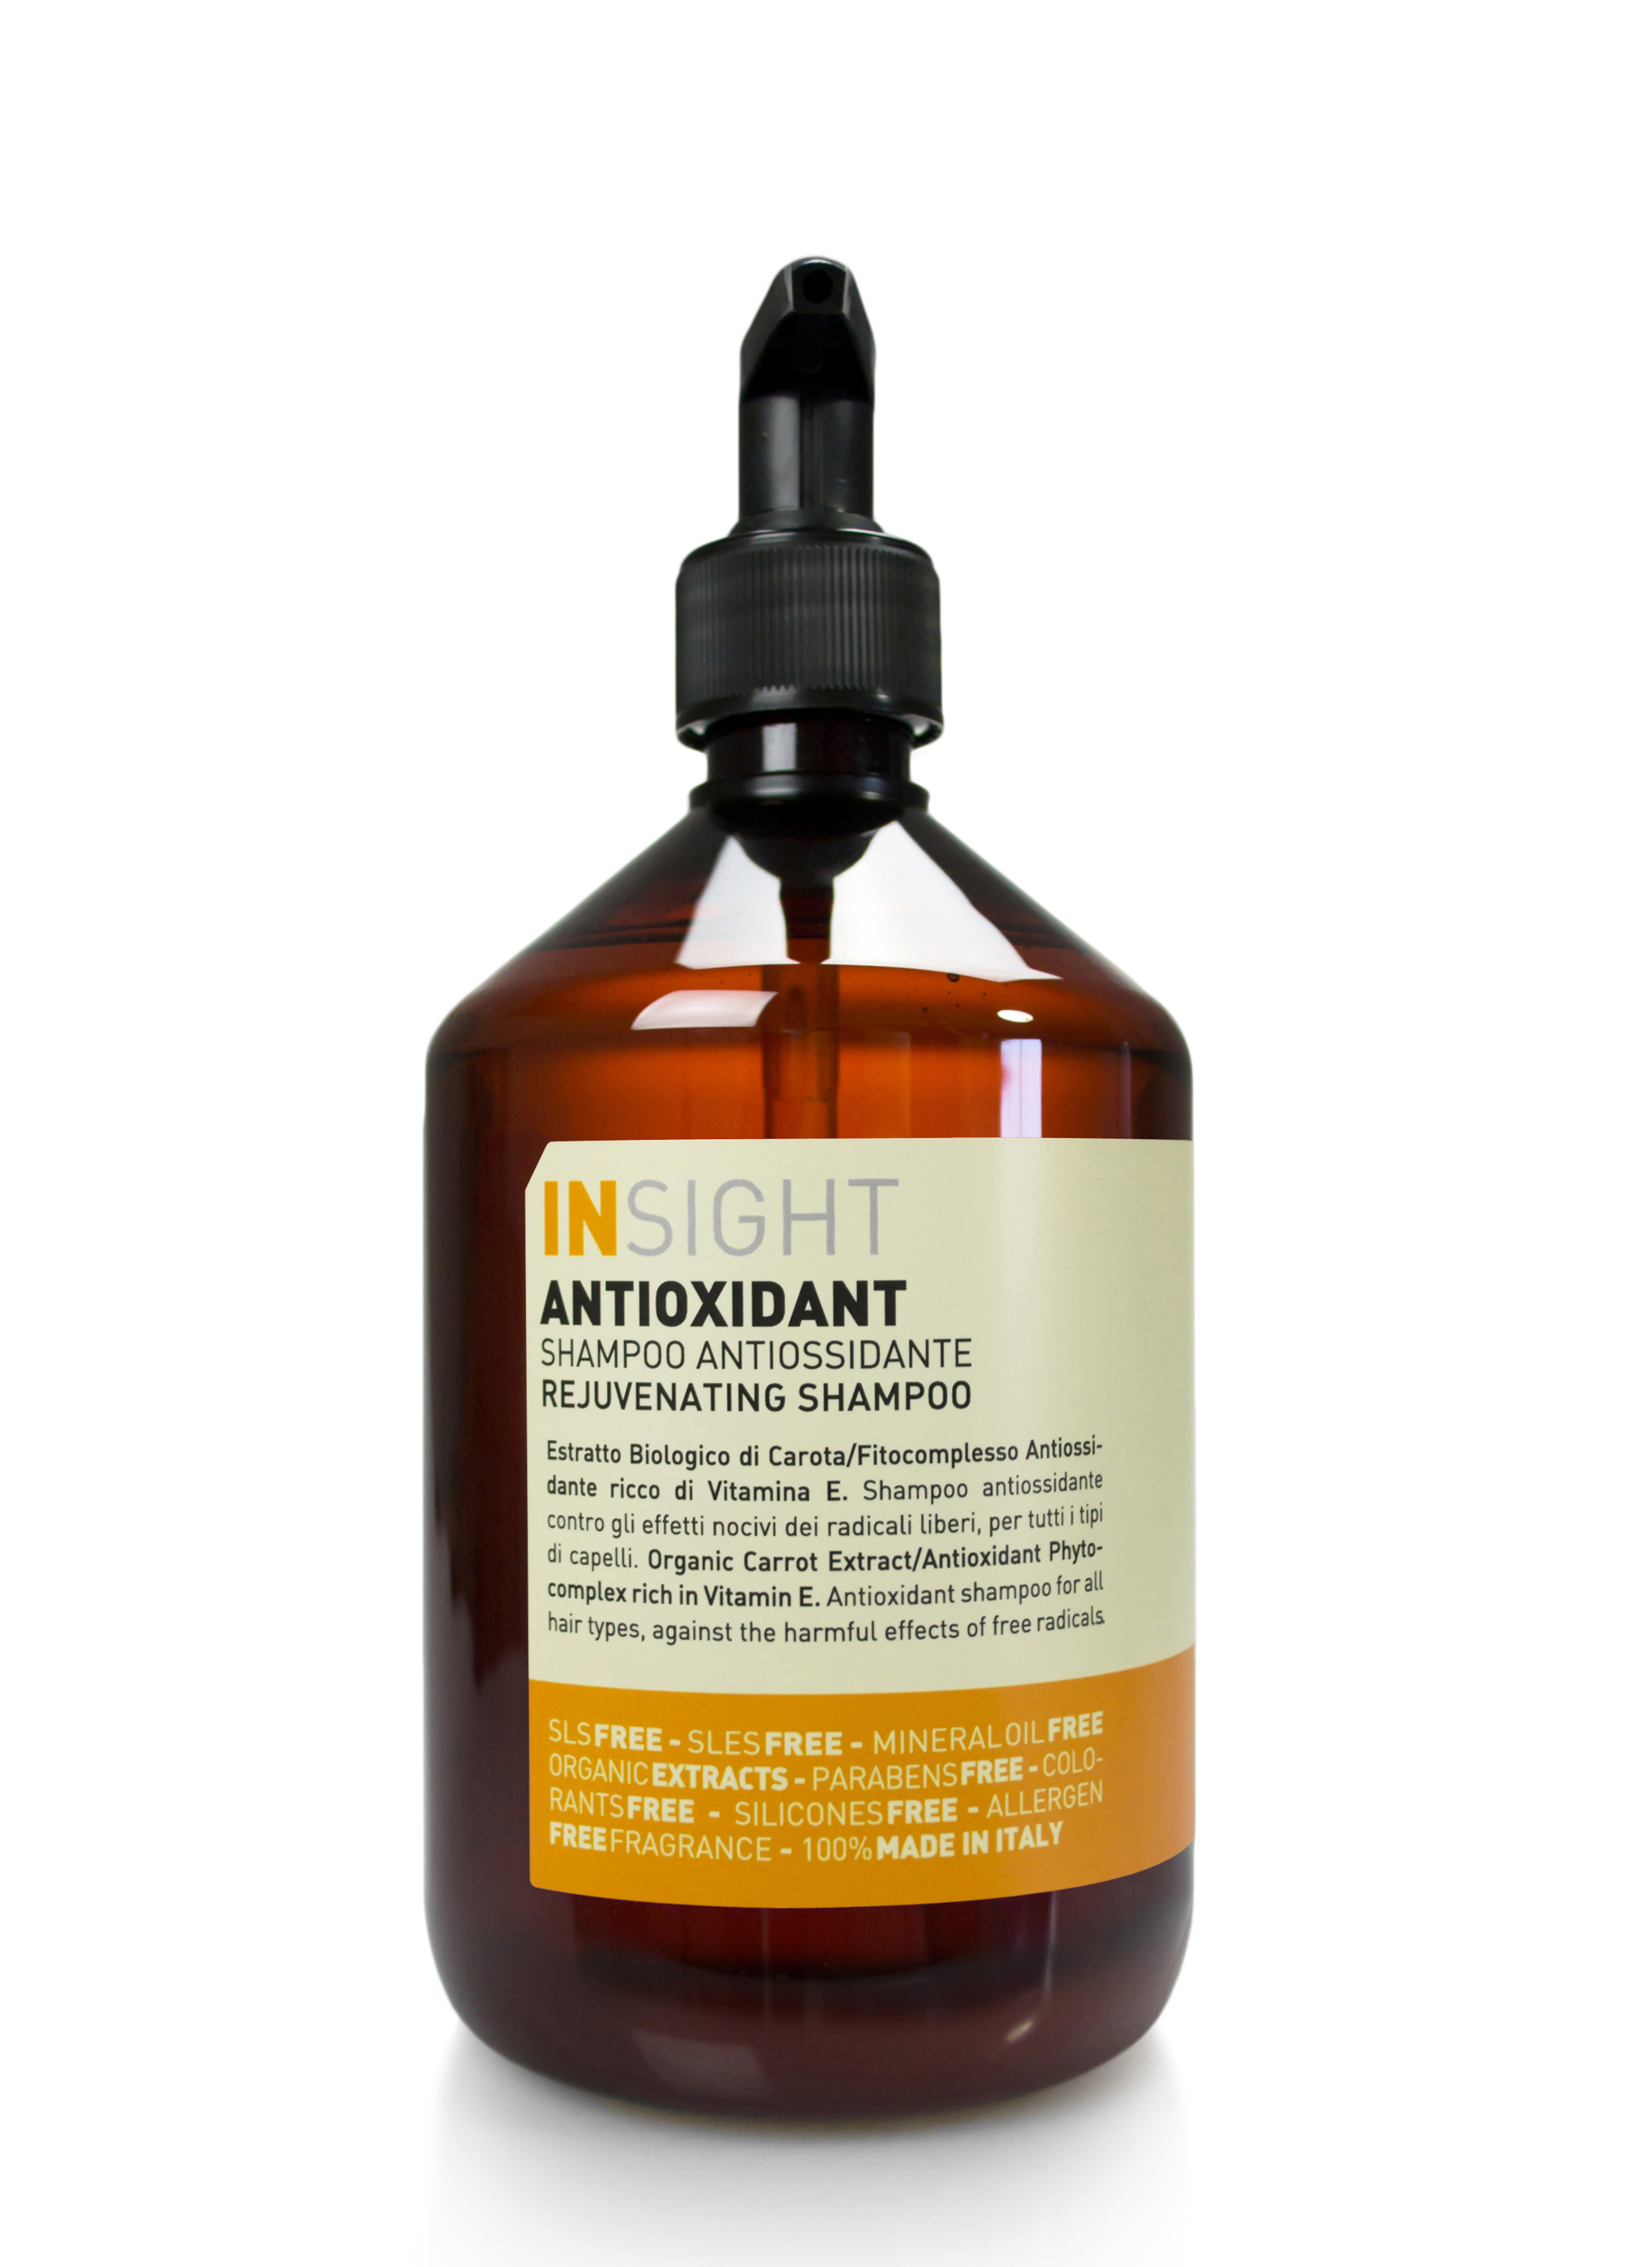 Insight – Sampon antioxidant pentru toate tipurile de par cu extract de morcov 400ml haircare.ro imagine